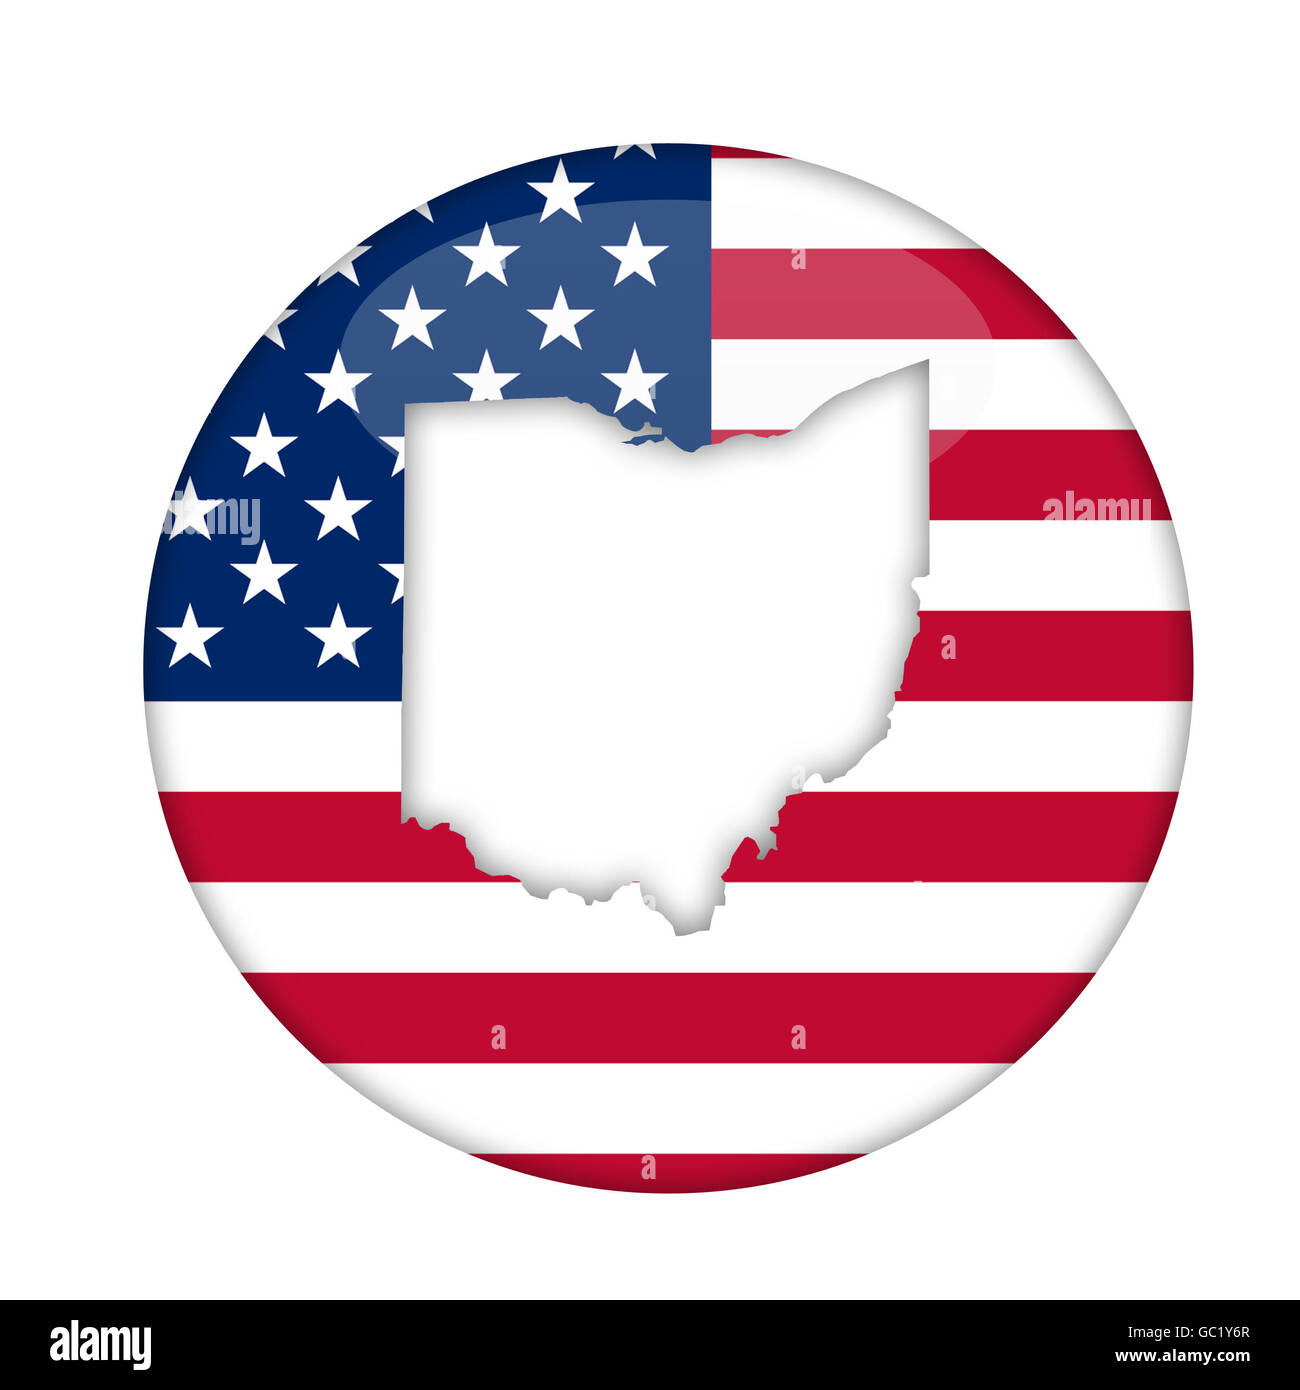 Ohio State of America distintivo isolato su uno sfondo bianco. Foto Stock